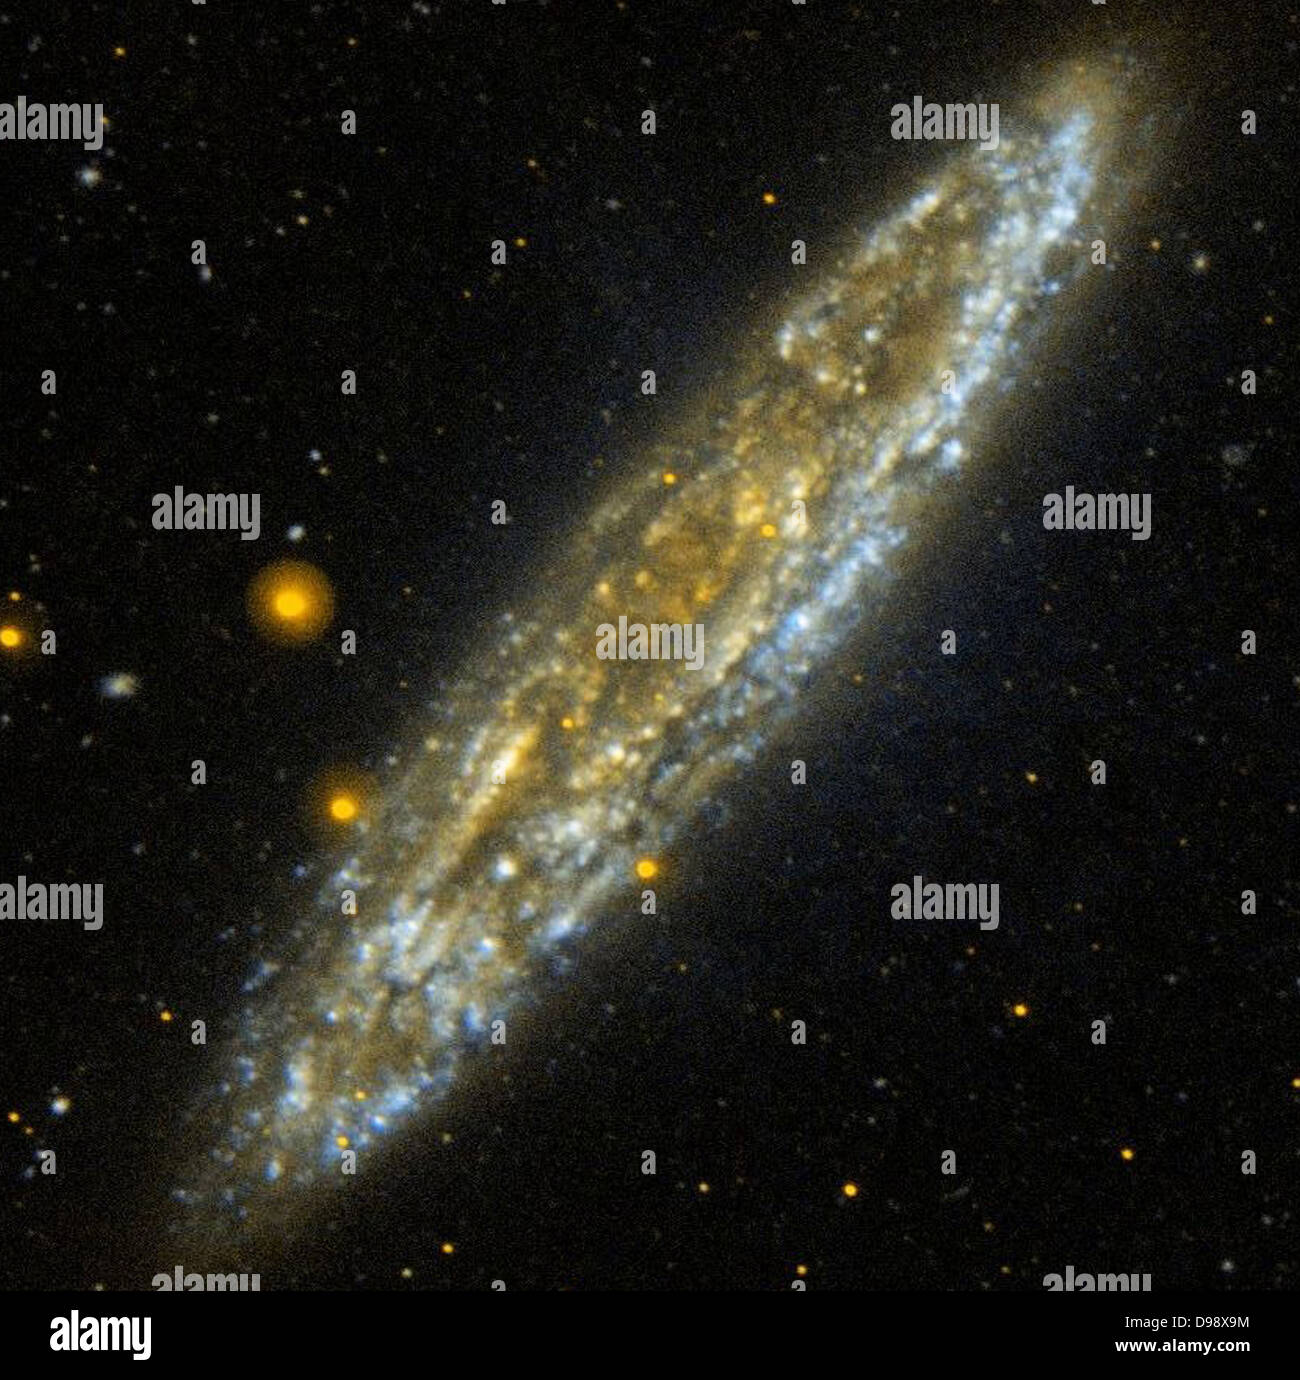 Silver Dollar Galaxy: NGC 253 nur 10 Millionen Lichtjahren im südlichen Sternbild Bildhauer, der Silver Dollar Galaxie, NGC 253, ist eine der hellsten Spiralgalaxien in den Nachthimmel. In dieser Kante Blick von der NASA Galaxy Evolution Explorer, die Fetzen von Blau stellen relativ staubfreien Bereichen der Galaxie, die aktiv Sterne bilden. Bereiche der Galaxie mit einem weichen goldenen Glanz zeigen Regionen, in denen die weit - Ultraviolett ist stark durch Staub verdeckt werden. Stockfoto